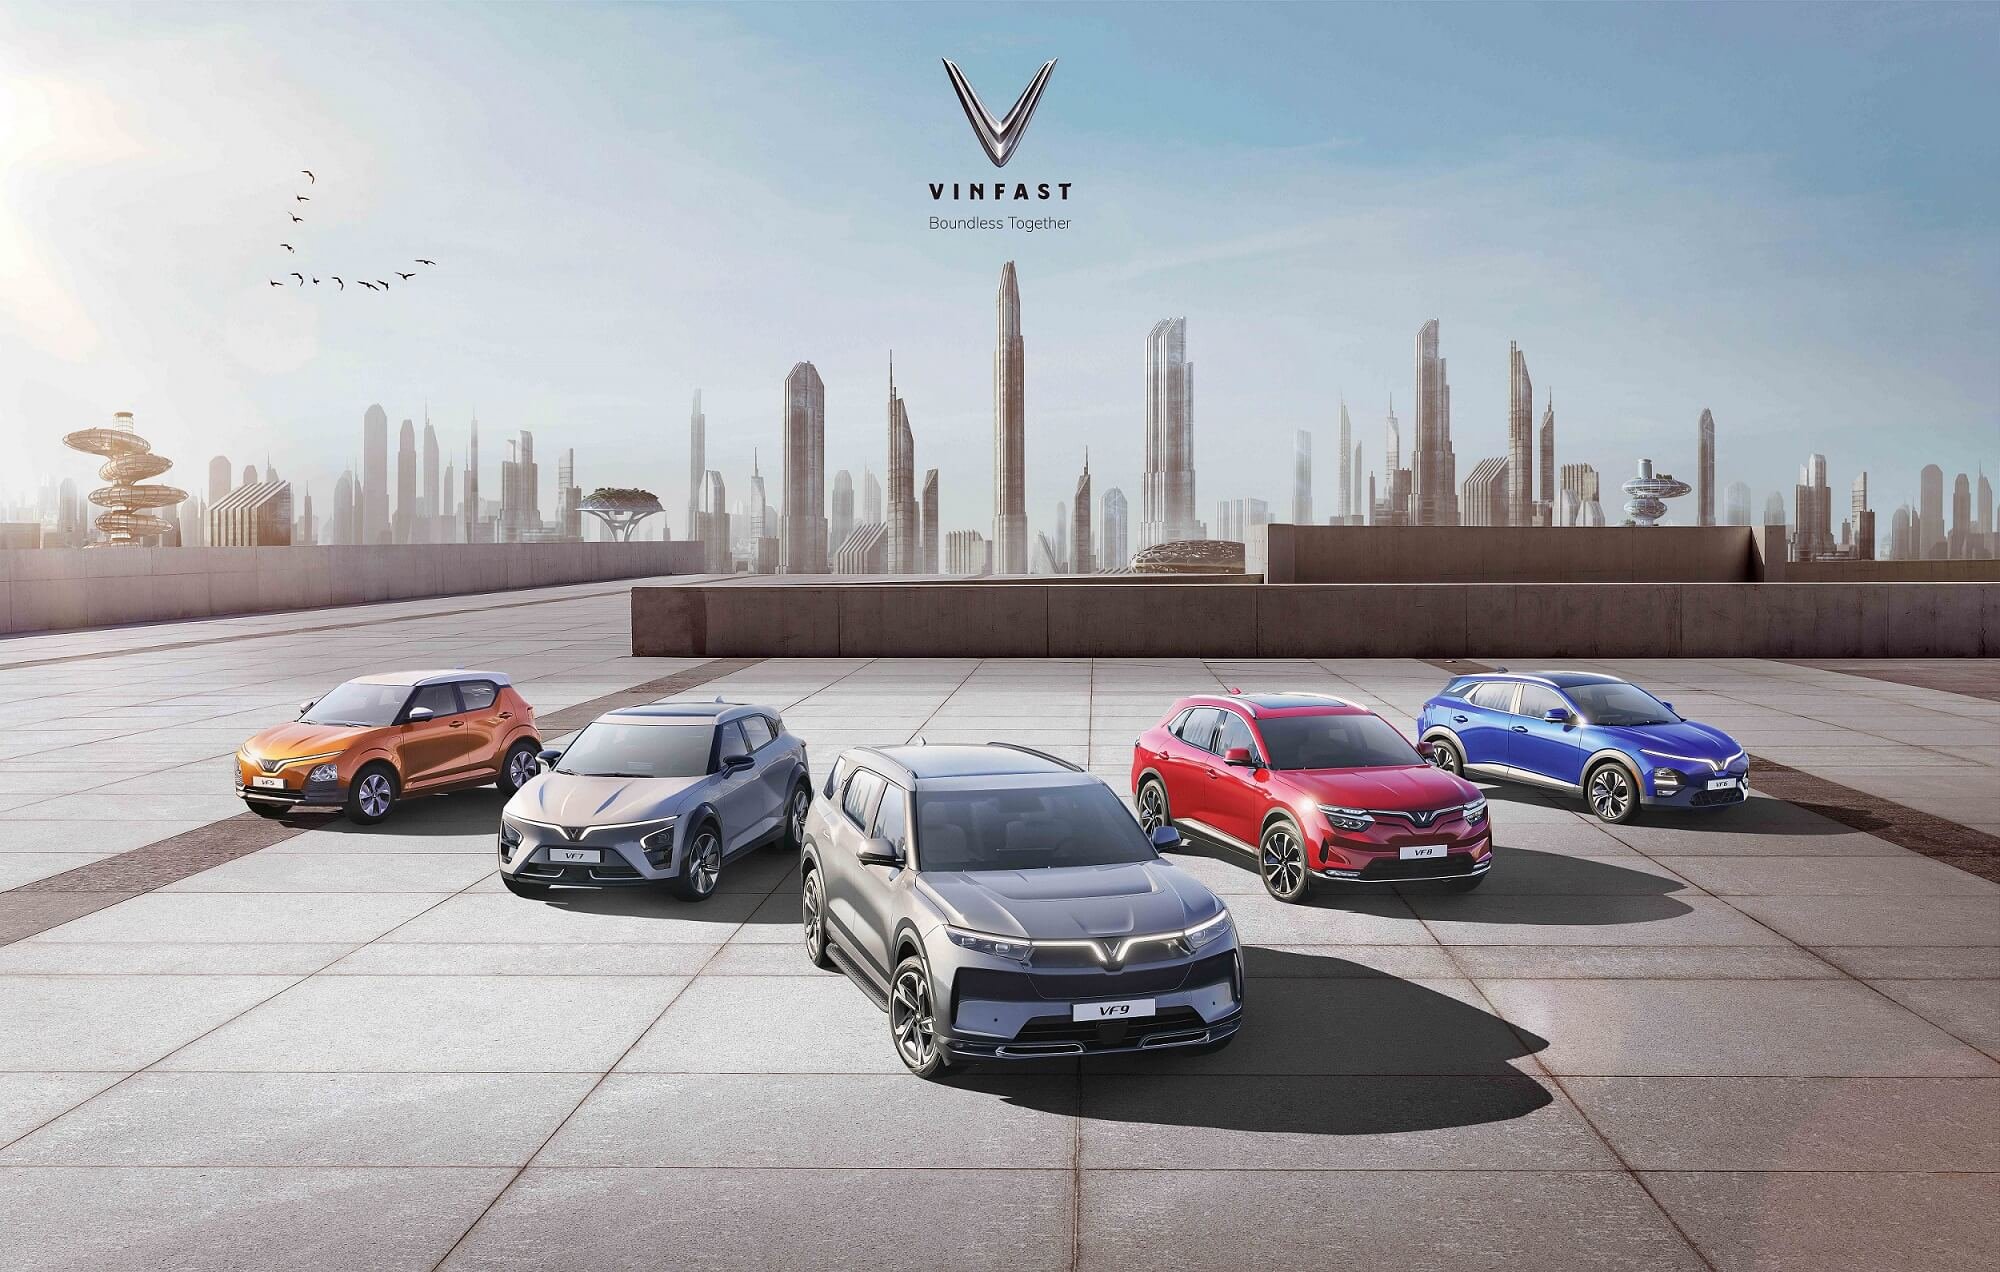  VinFast ค่ายรถยนต์ EV อัจฉริยะระดับโลก จากเวียดนาม พร้อมลุยตลาดไทย